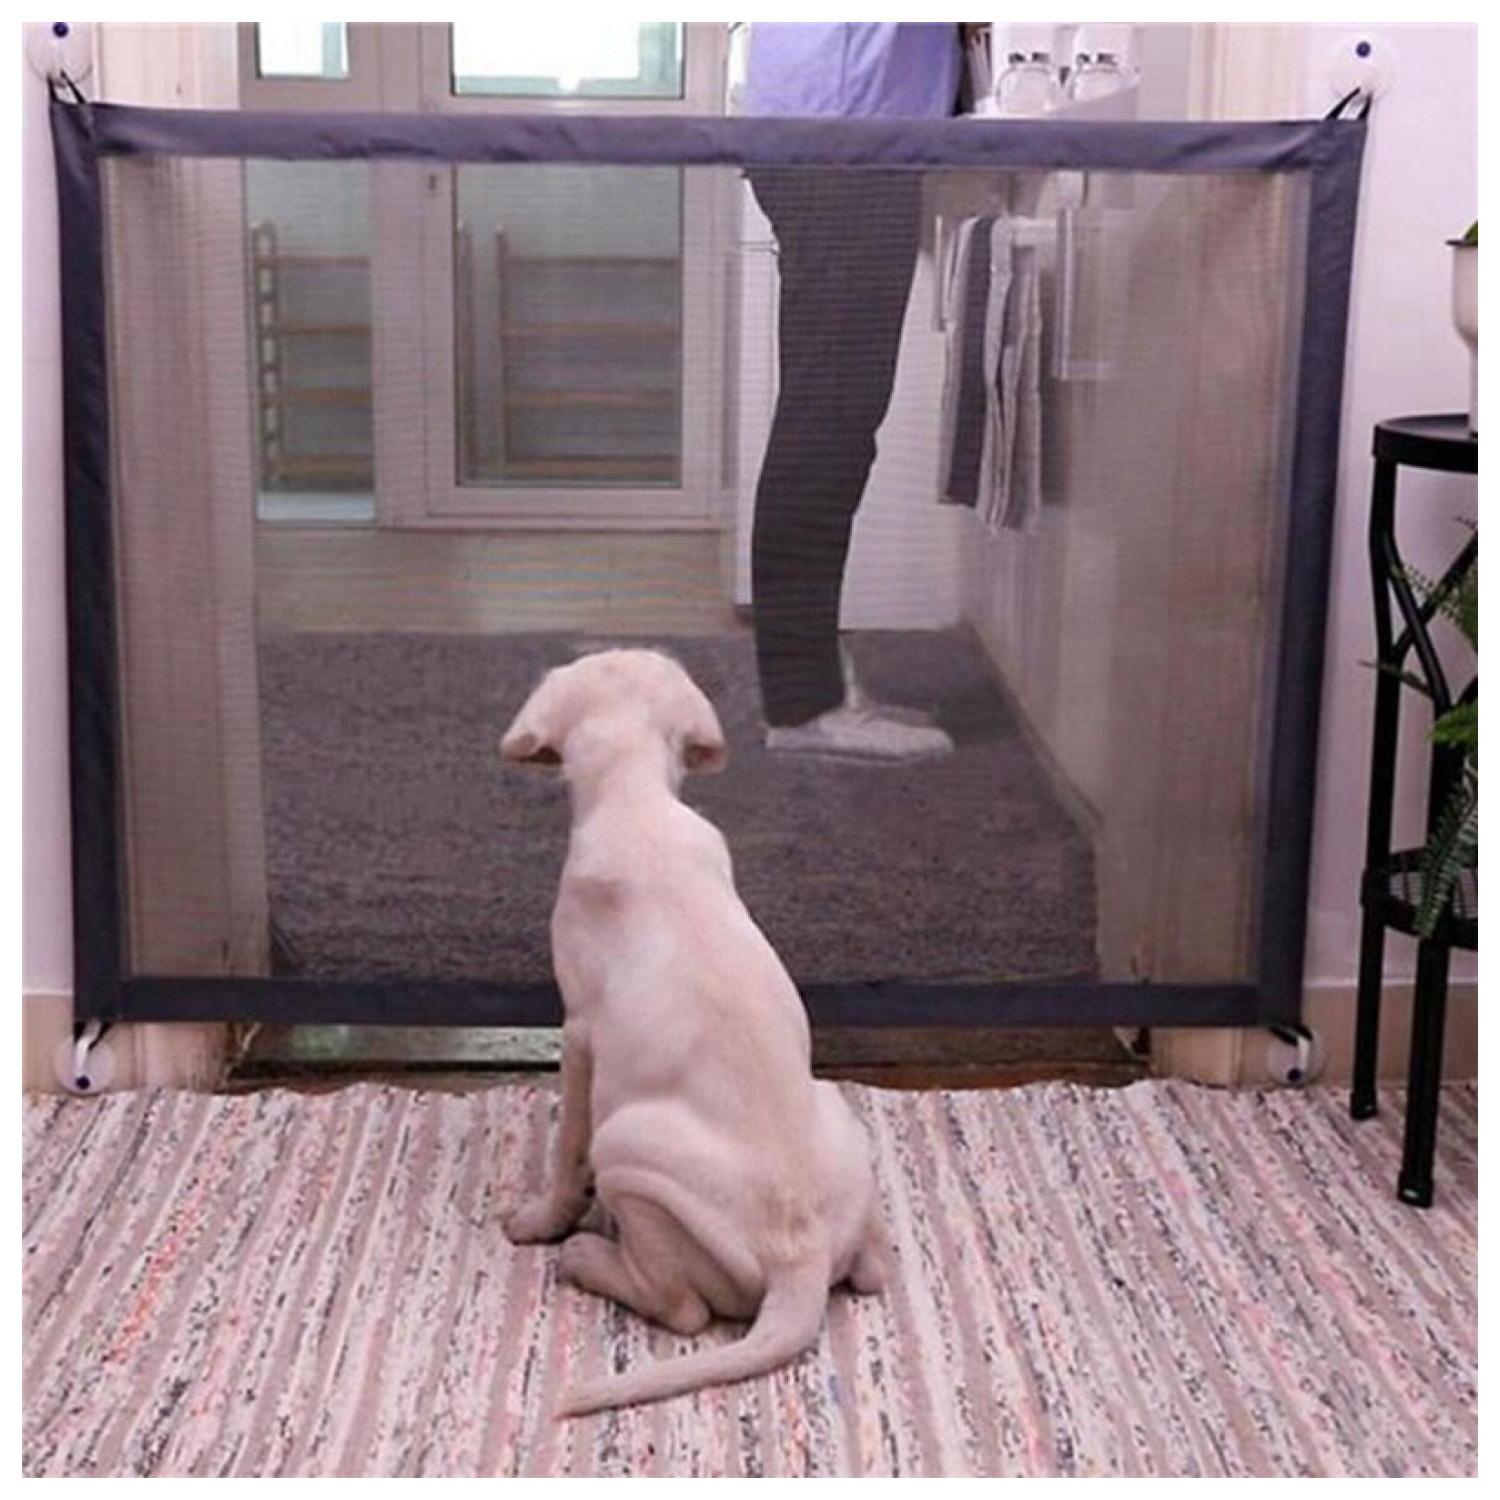 Malla De Seguridad Para Perros - Puerta Mágica Bebe